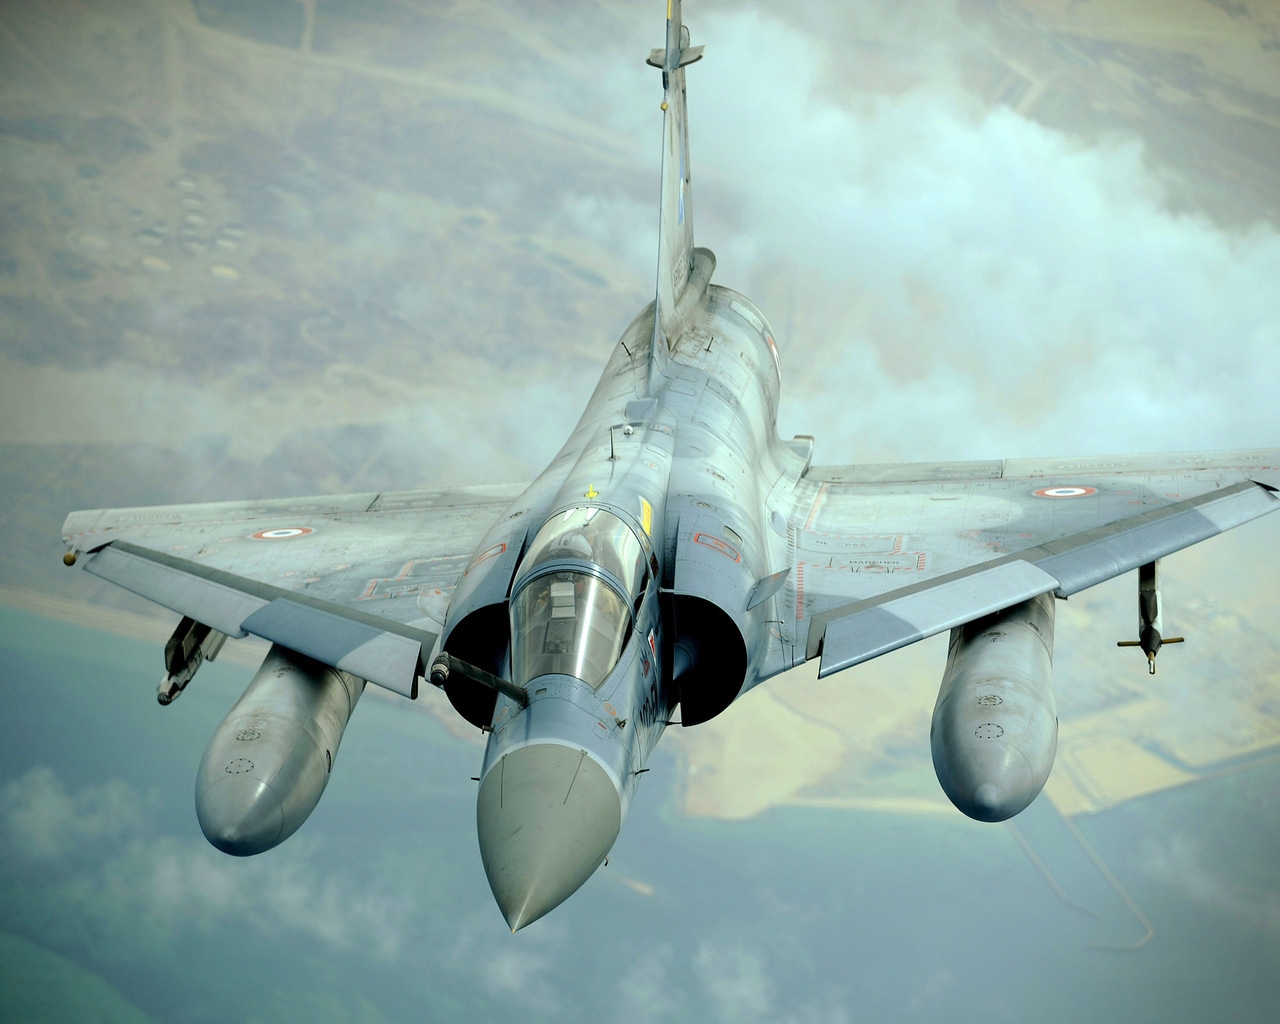 Dassault Mirage 2000 for 1280 x 1024 resolution